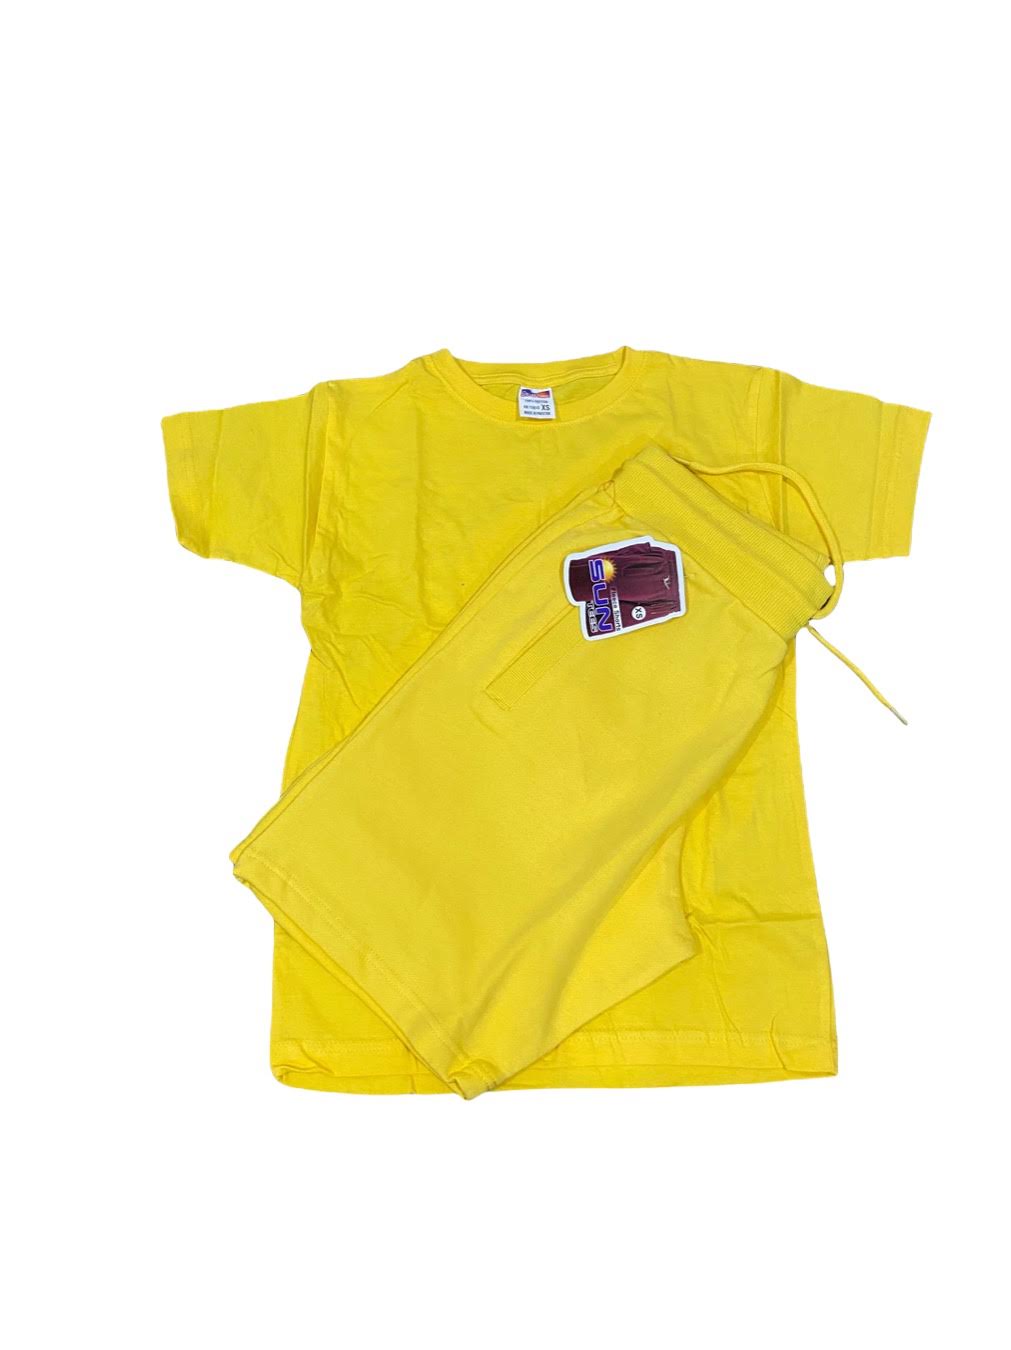 Yellow t-shirt and short sets